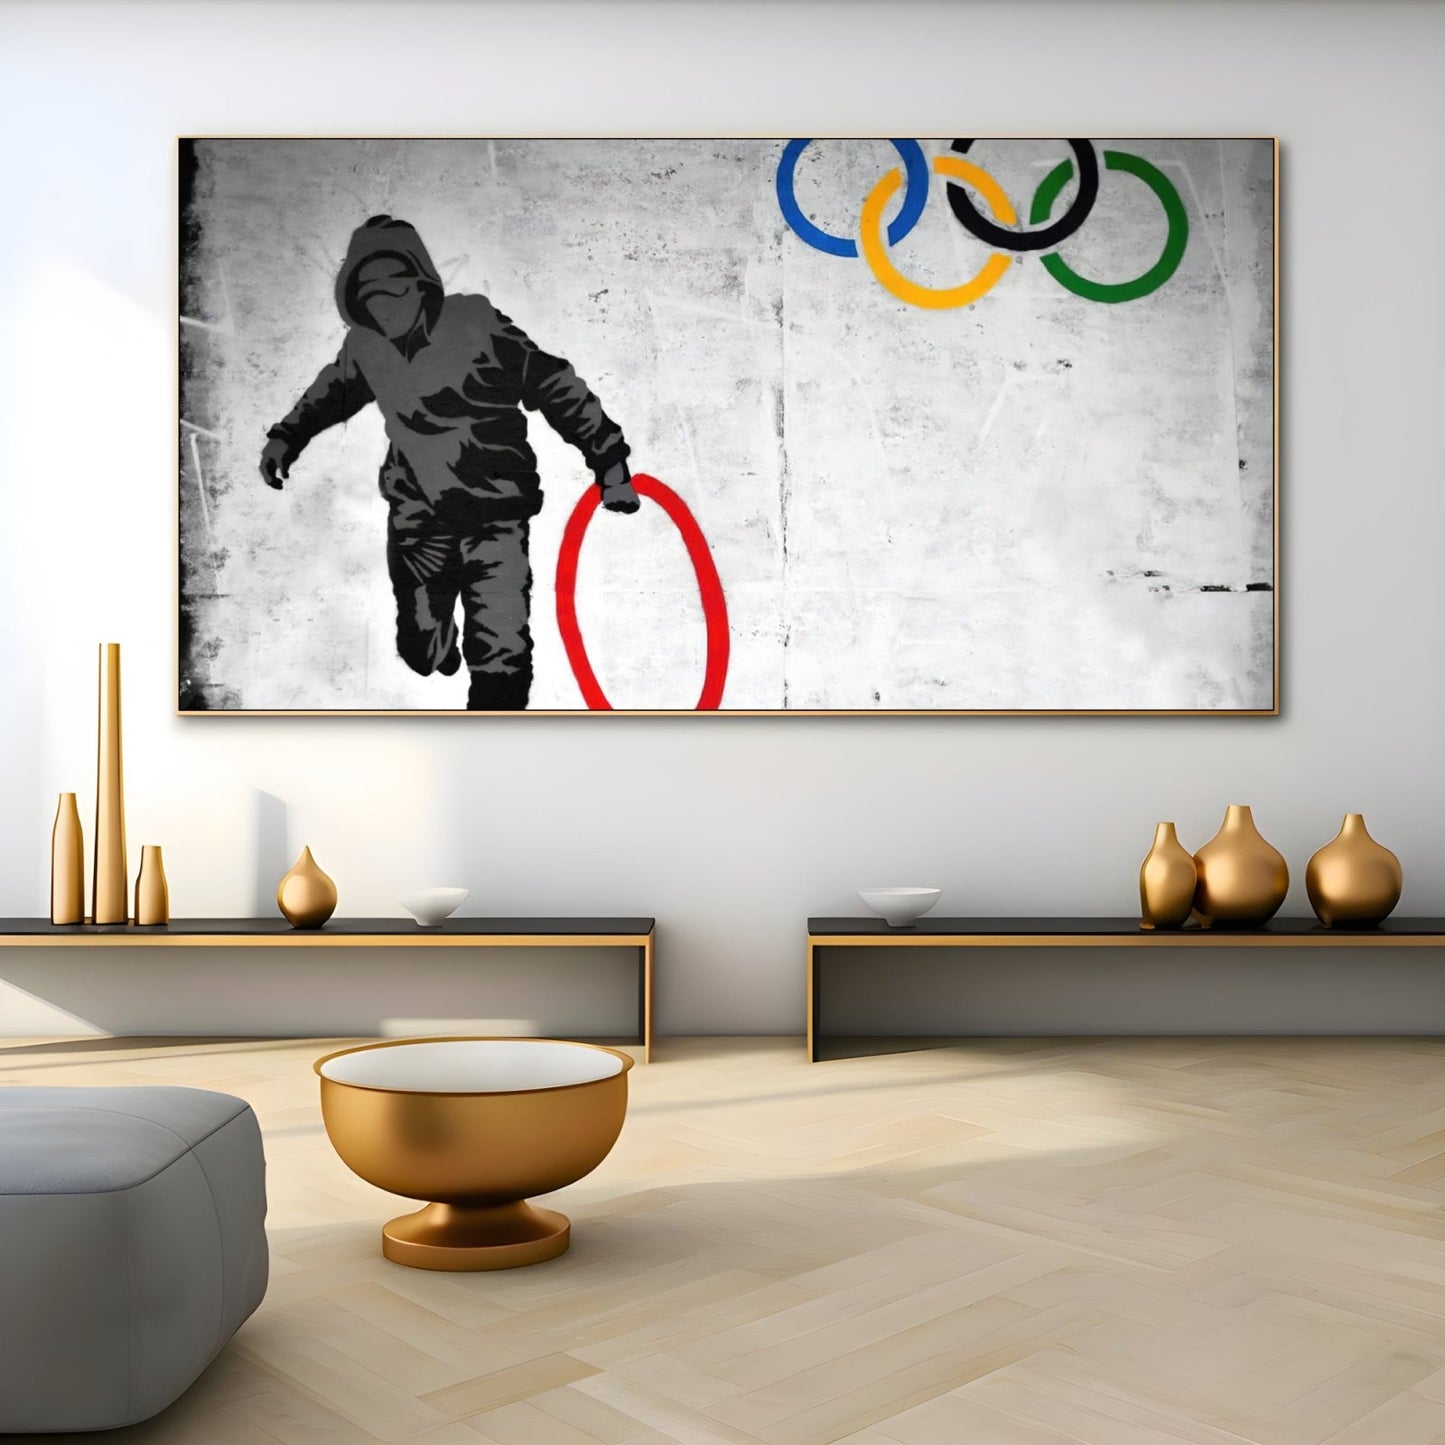 Olimpiai gyűrűk fosztogatója, Banksy